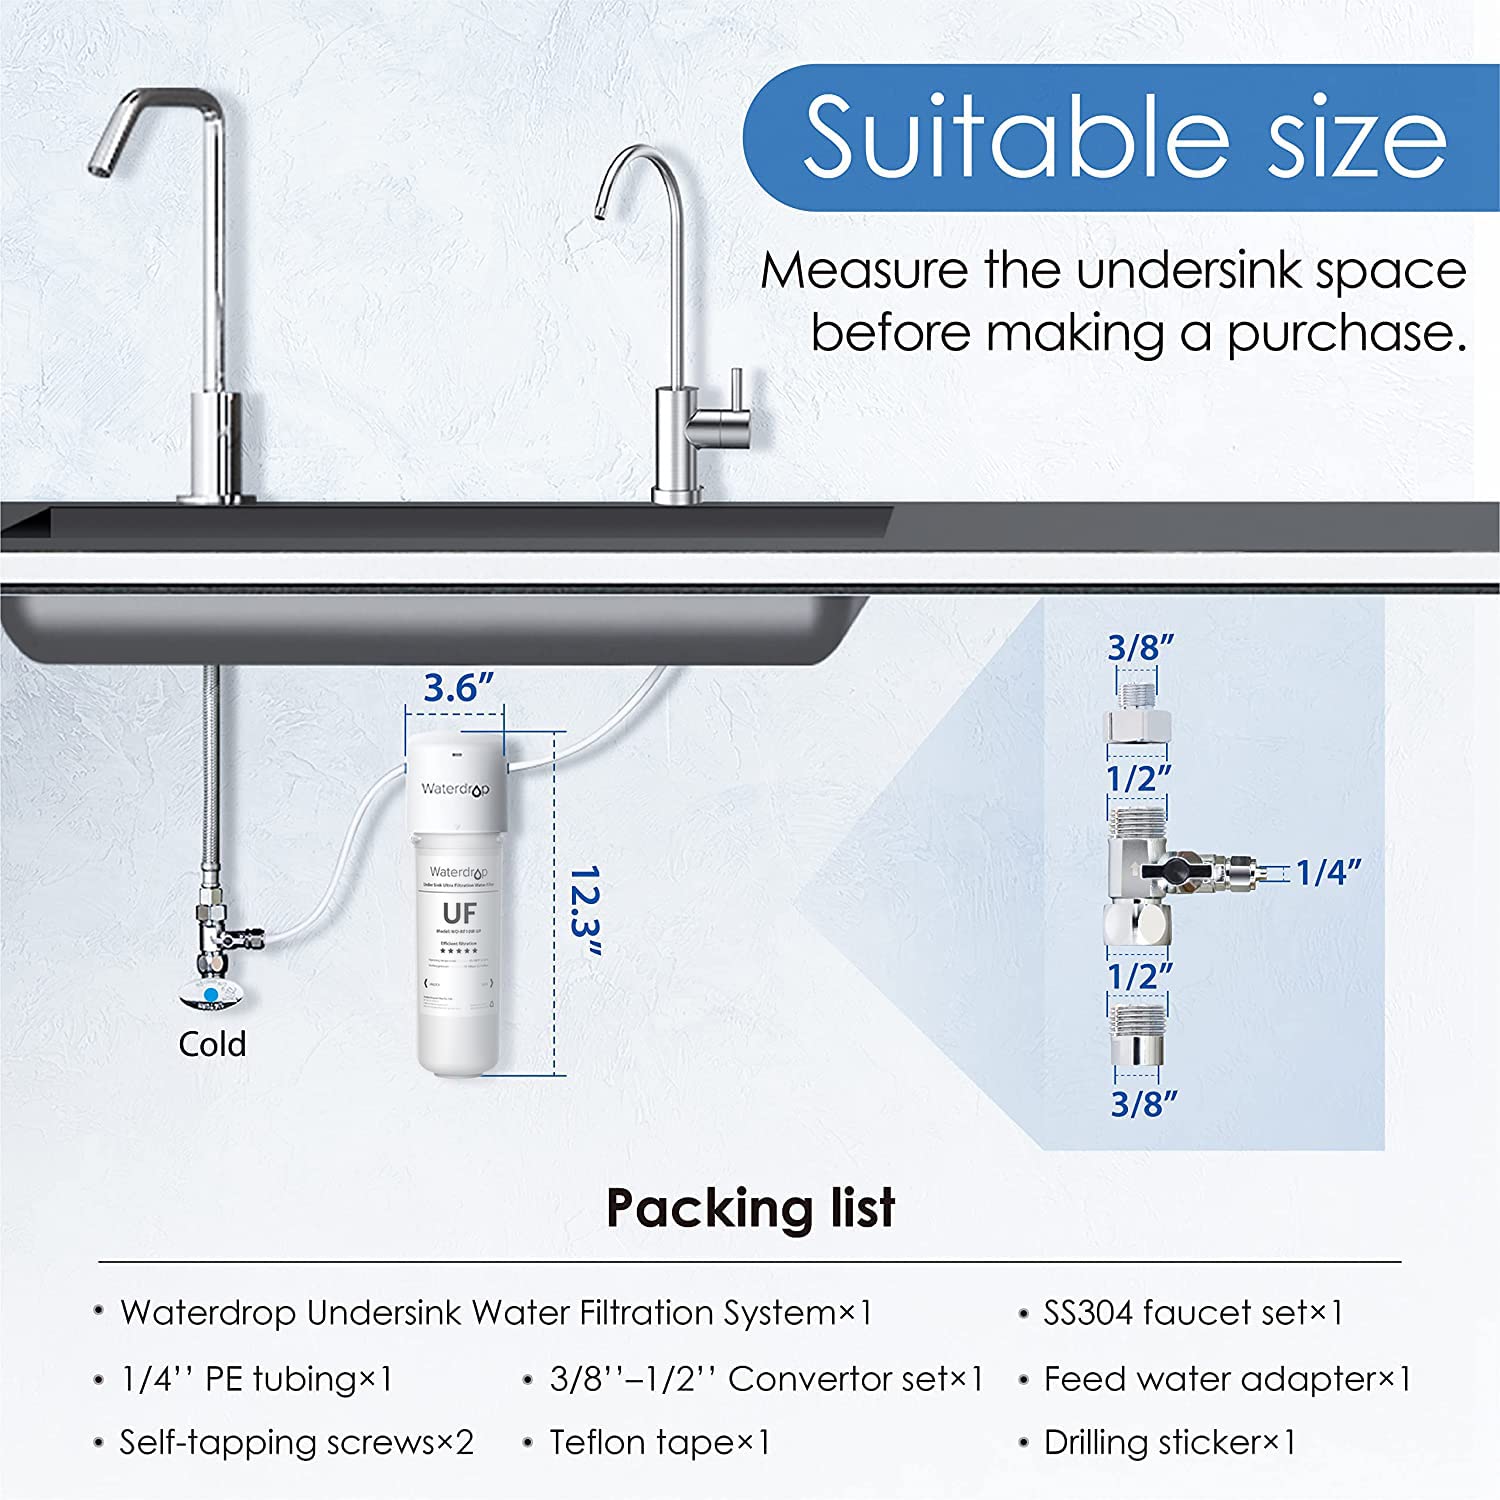 Waterdrop 15UB-UF Under Sink Water Filter System, 0.01 Micron